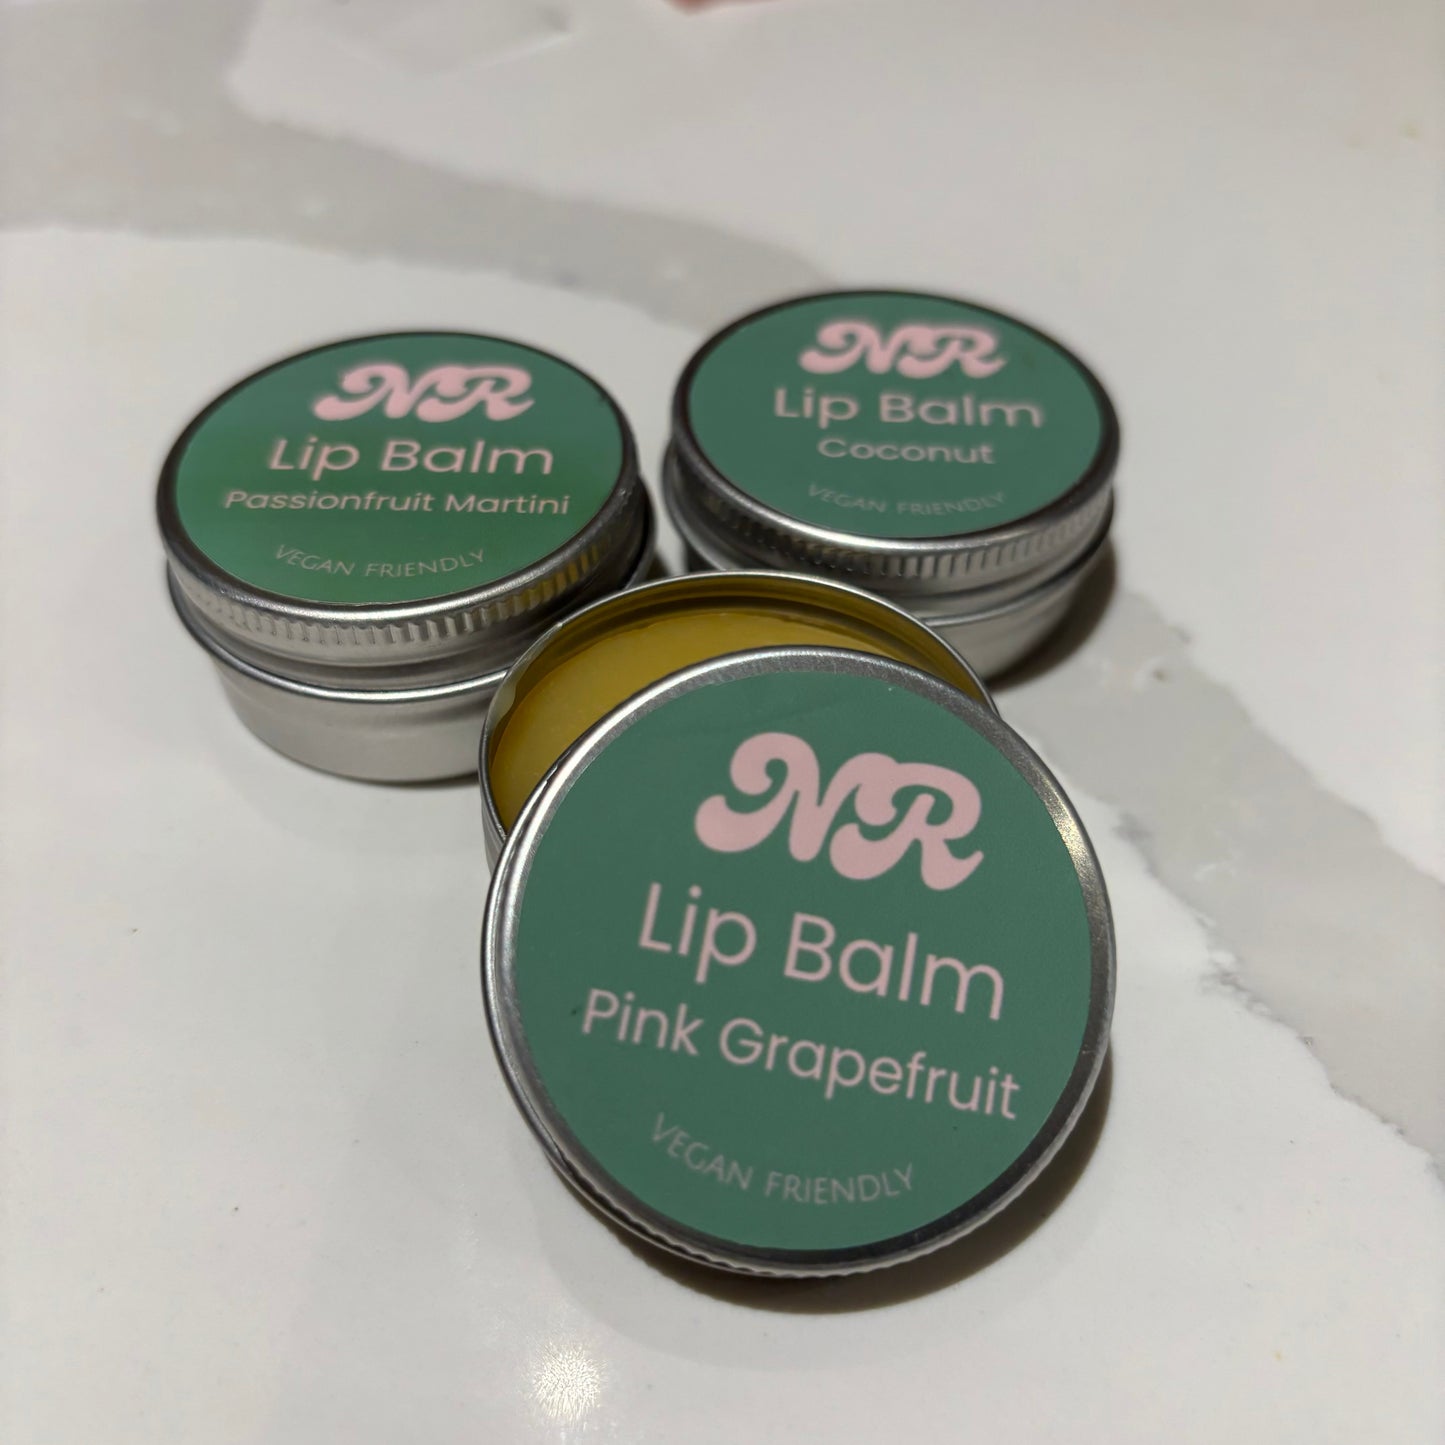 Own Brand Lip Balm